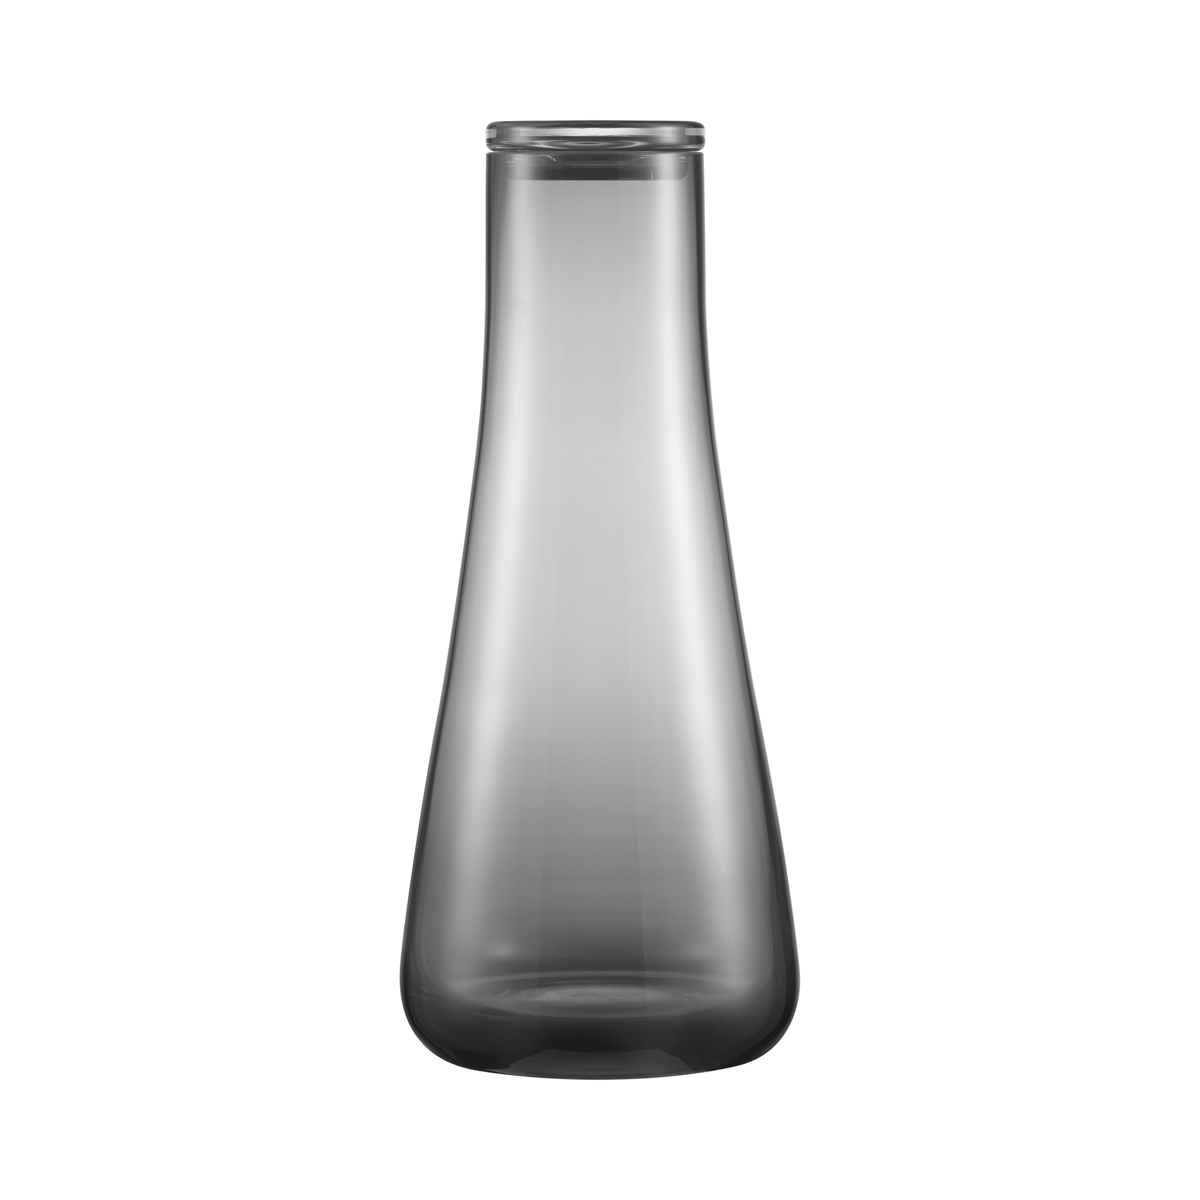 Wasserkaraffe -BELO- Smoke 1200 ml, mit Glasdeckel, Ø 11,5 cm. Material: Glas. Von Blomus.